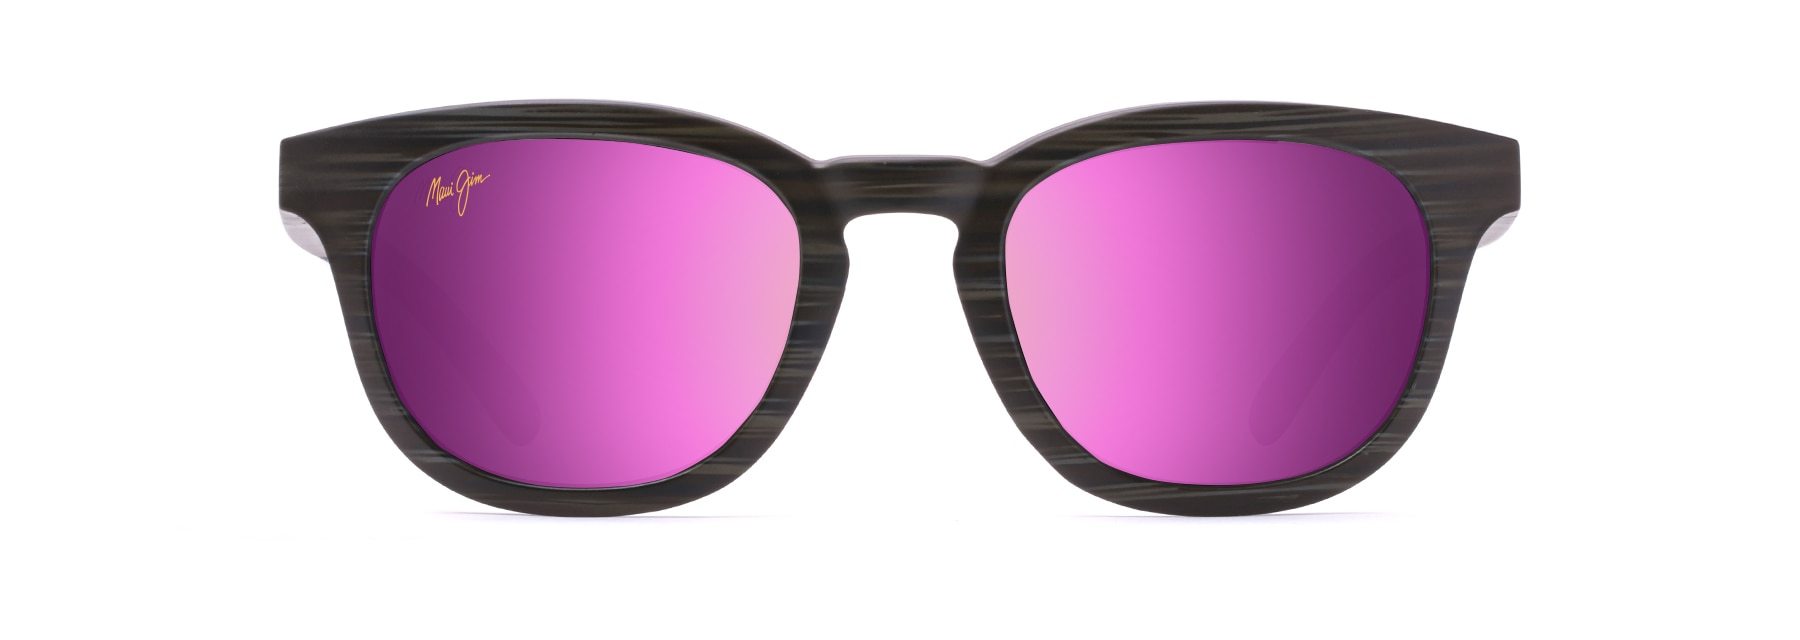 MyMaui Koko Head MM737-021 Sunglasses